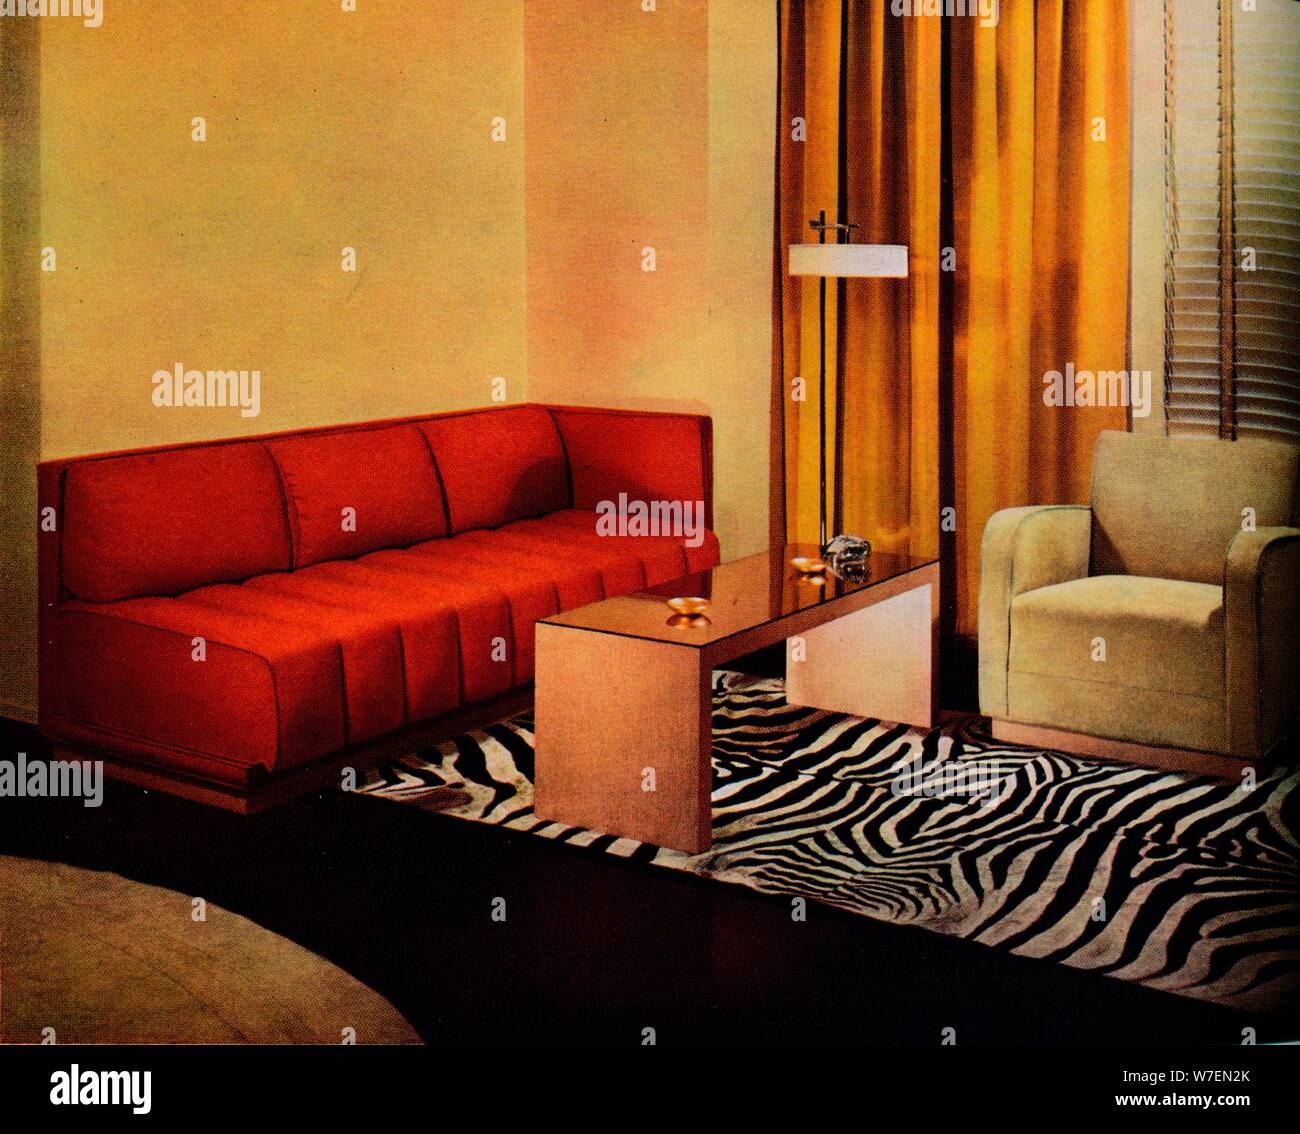 Un angolo del designer americano Walter Dorwin Teague il proprio soggiorno', C1940. Artista: sconosciuto. Foto Stock